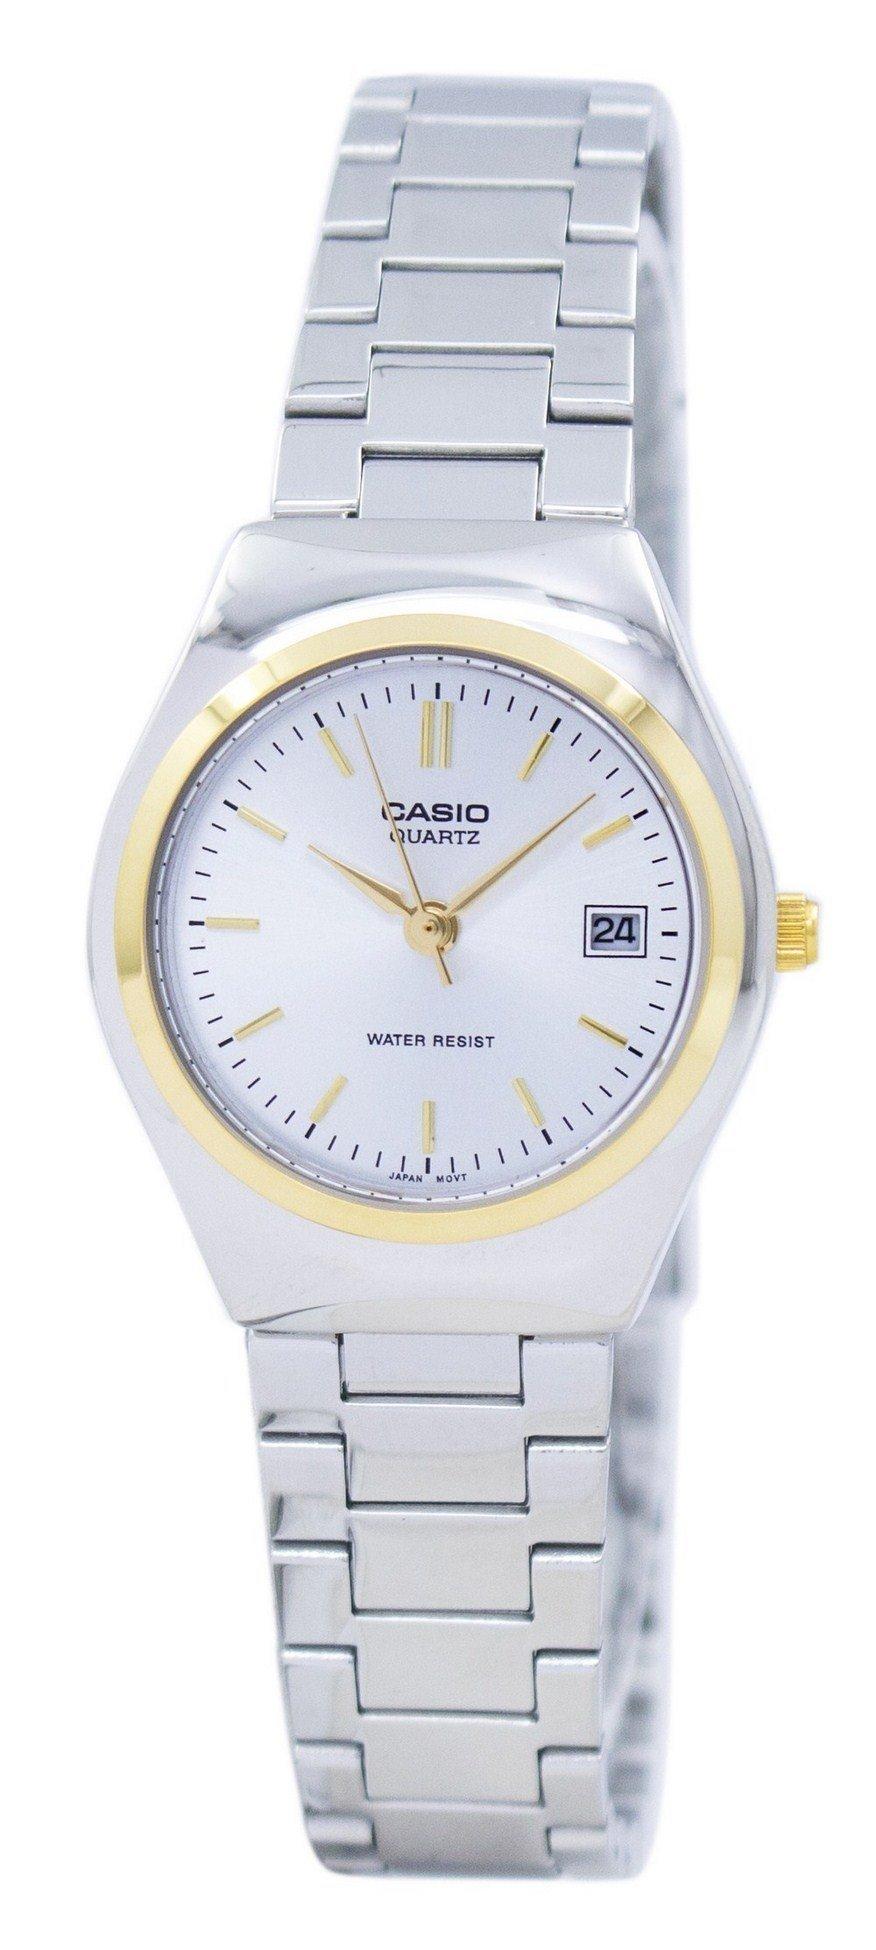 Casio Analog Quartz LTP-1170G-7ARDF LTP1170G-7ARDF Women's Watch